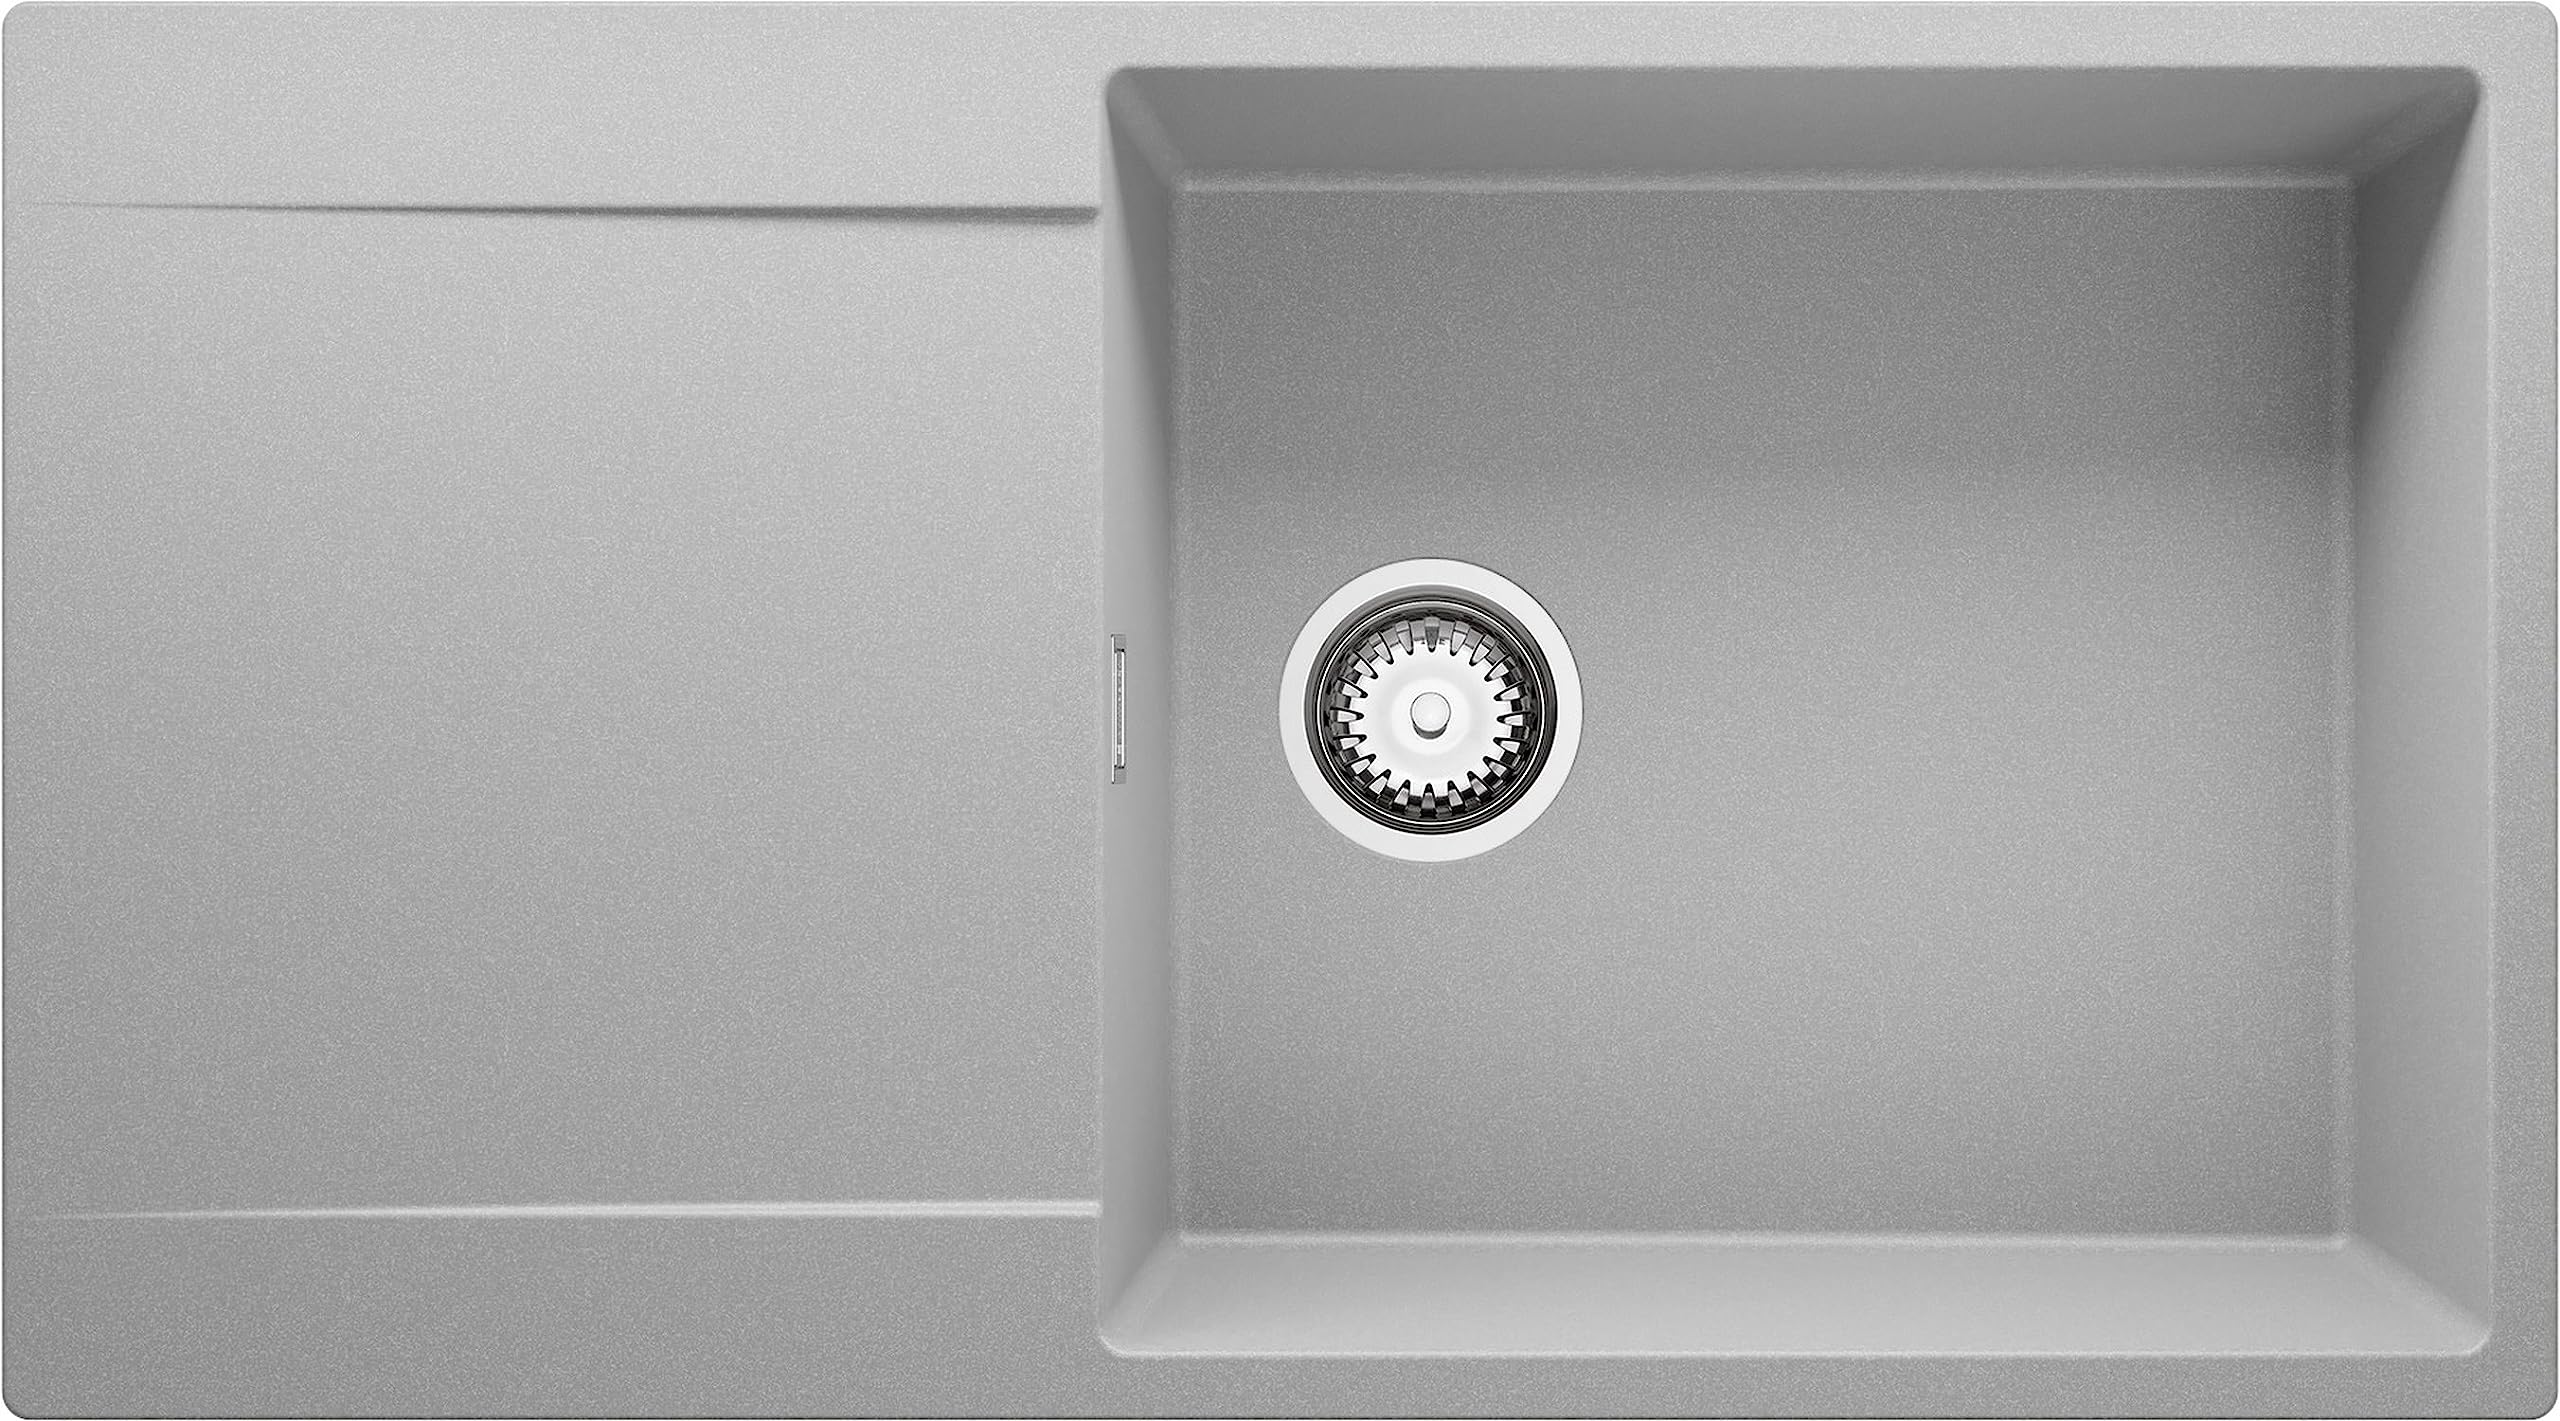 Spülbecken Grau 90x50 cm, Granitspüle + Ablauf-Set, Küchenspüle für 60er Unterschrank, Einbauspüle von Primagran